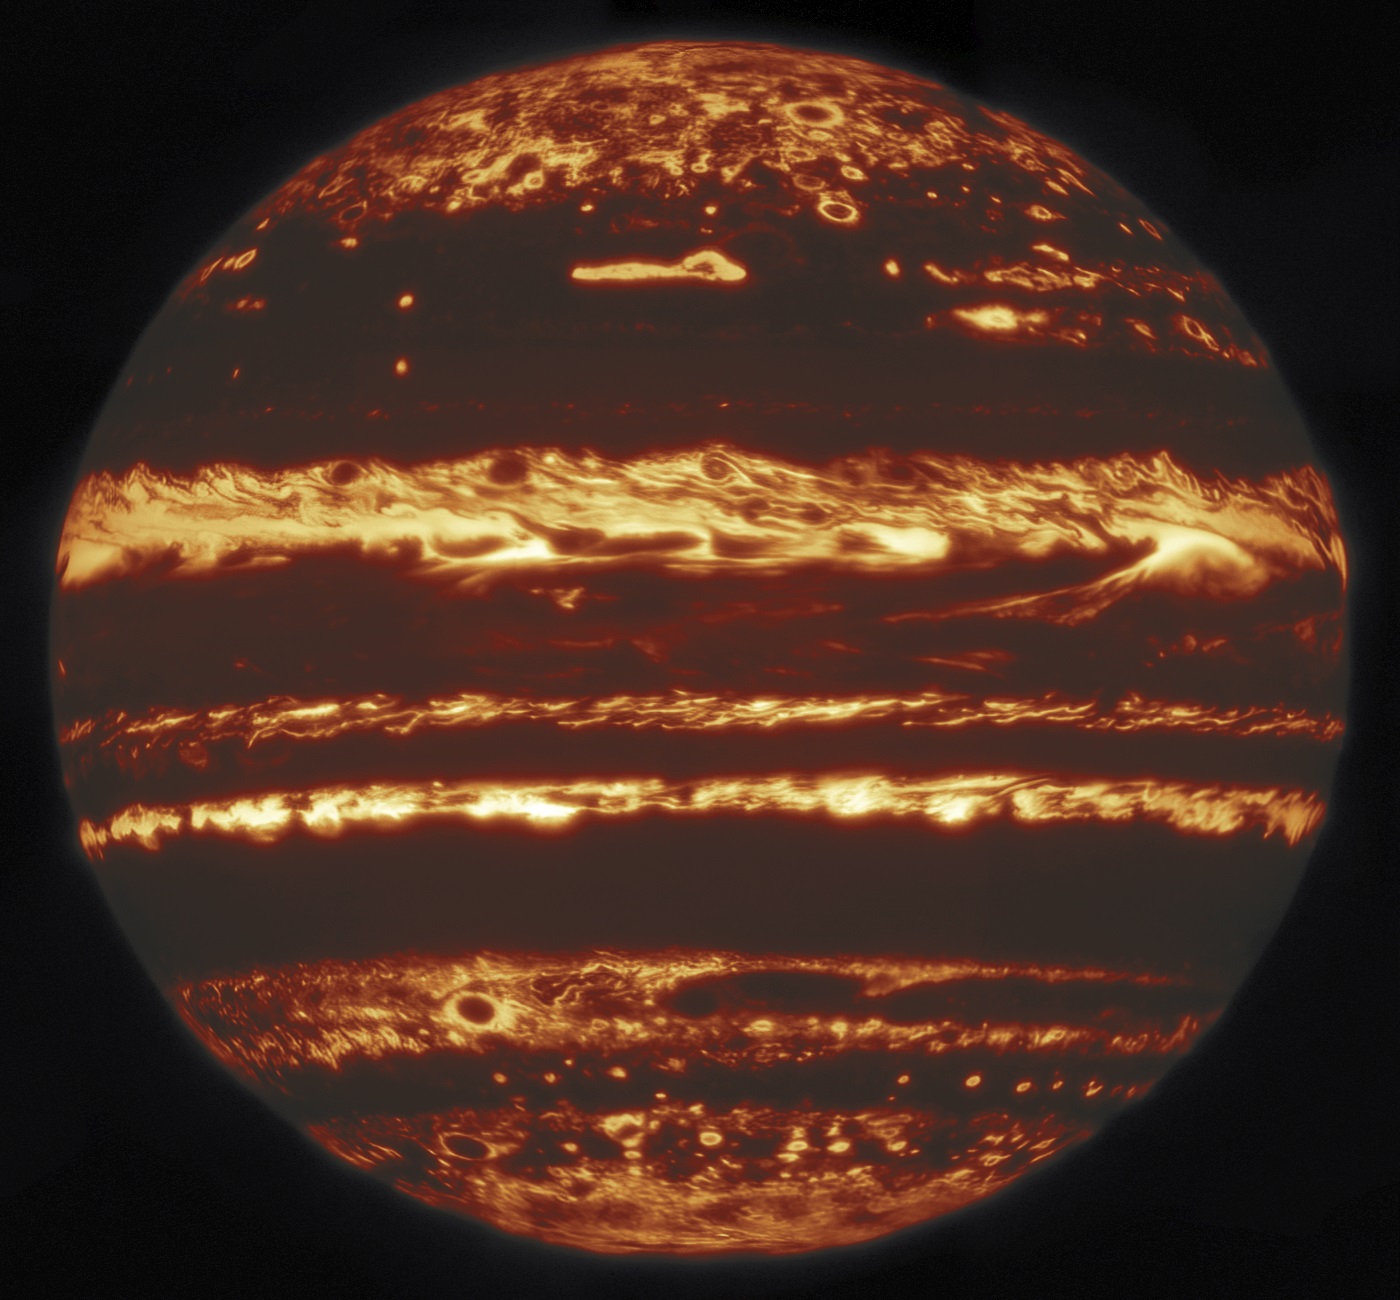 赤外線で見た木星の鮮明画像